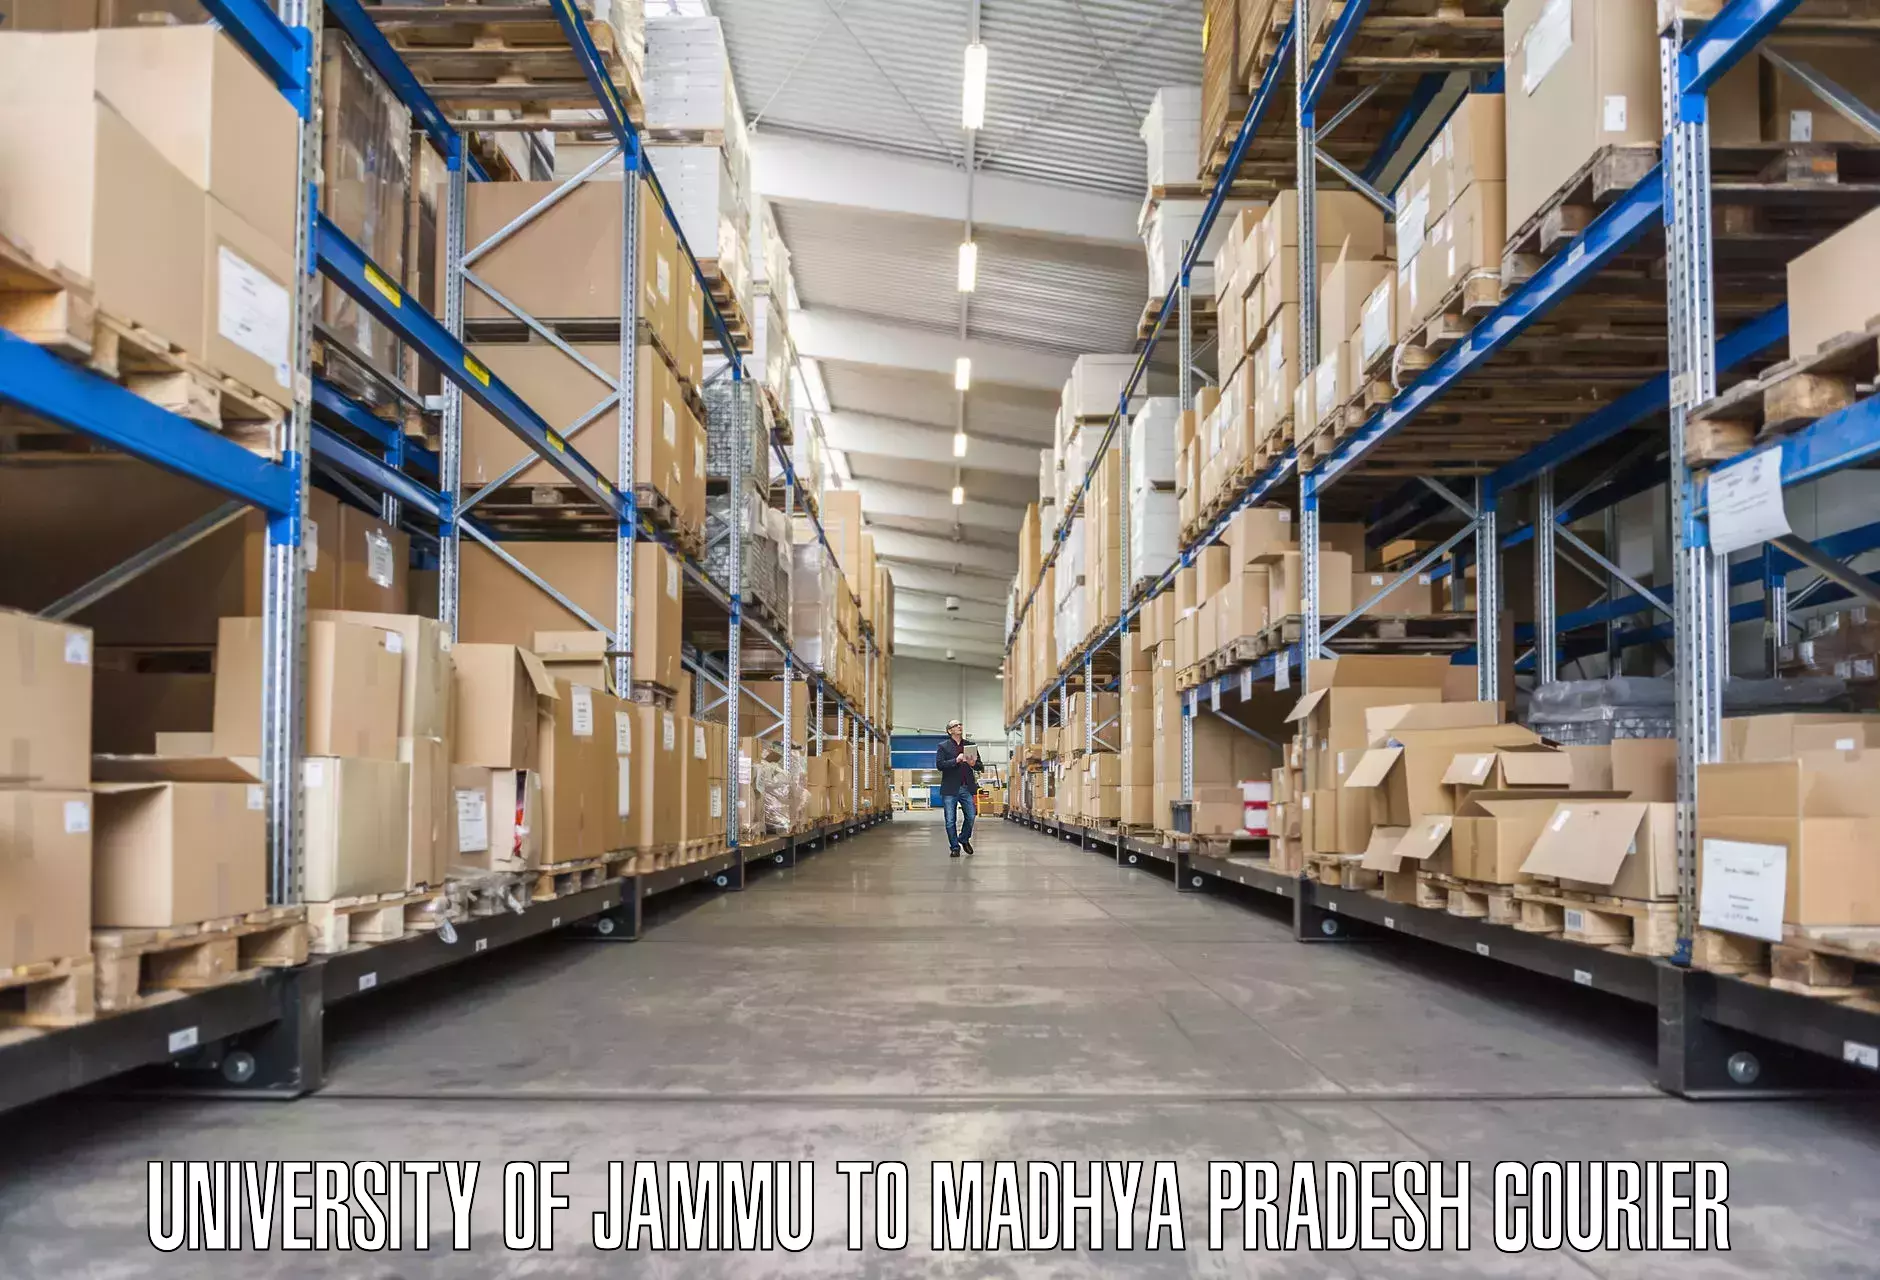 Moving and packing experts University of Jammu to Madhya Pradesh